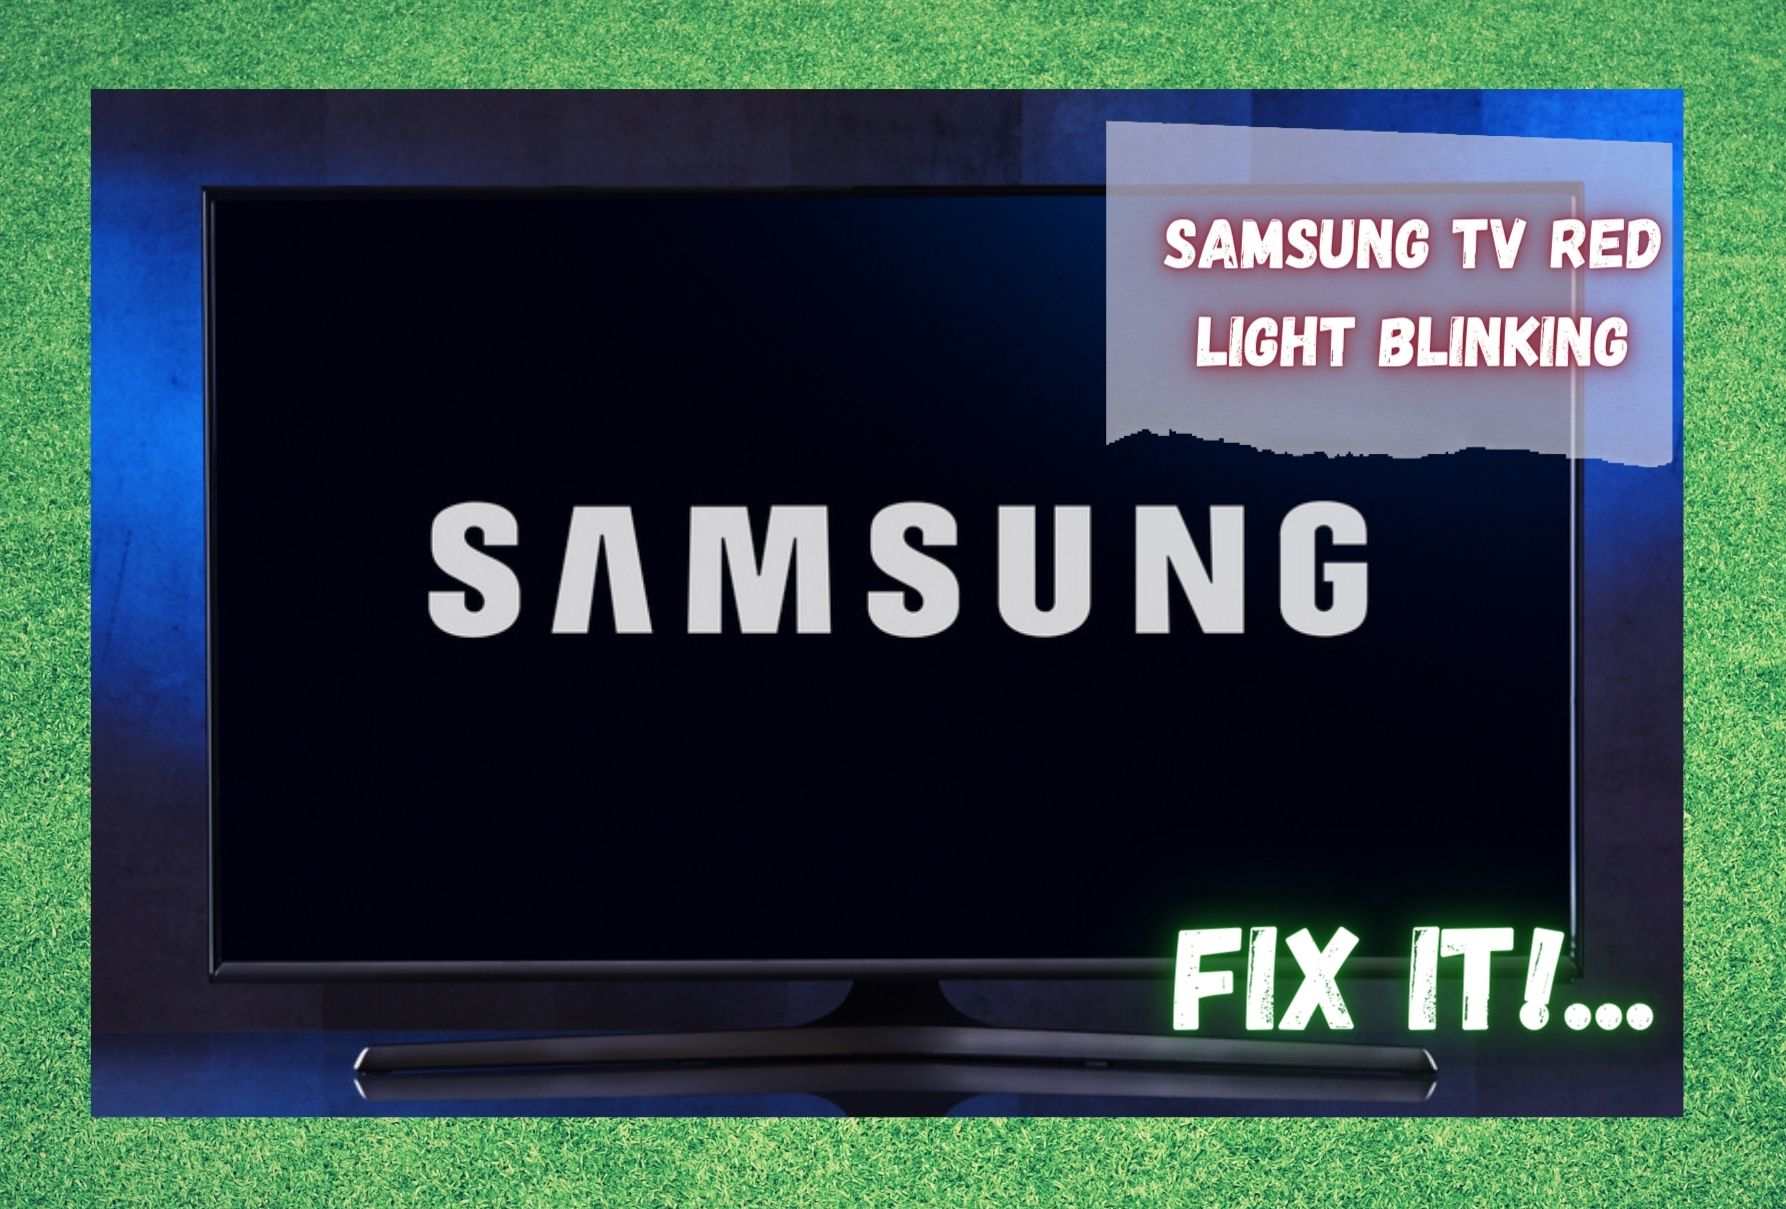 Clignotement du voyant rouge de la TV Samsung : 6 façons de le réparer